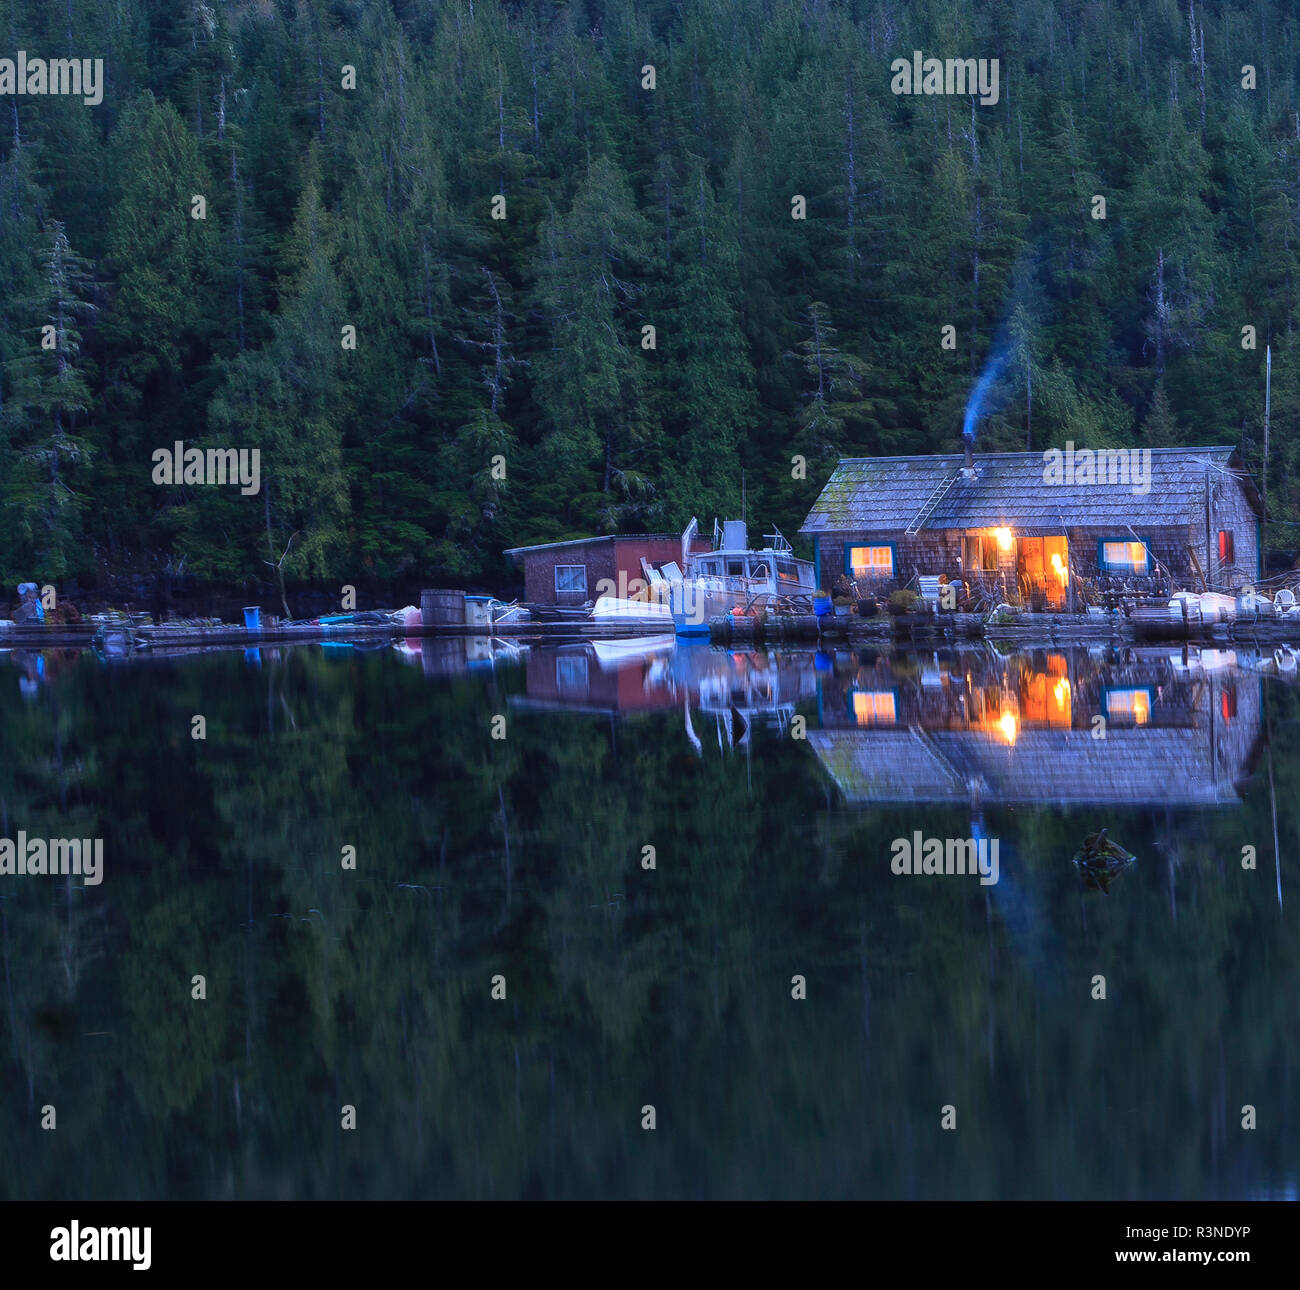 Passage Browning Hideaway Resort, au nord de l'île de Vancouver, Colombie-Britannique, Canada Banque D'Images